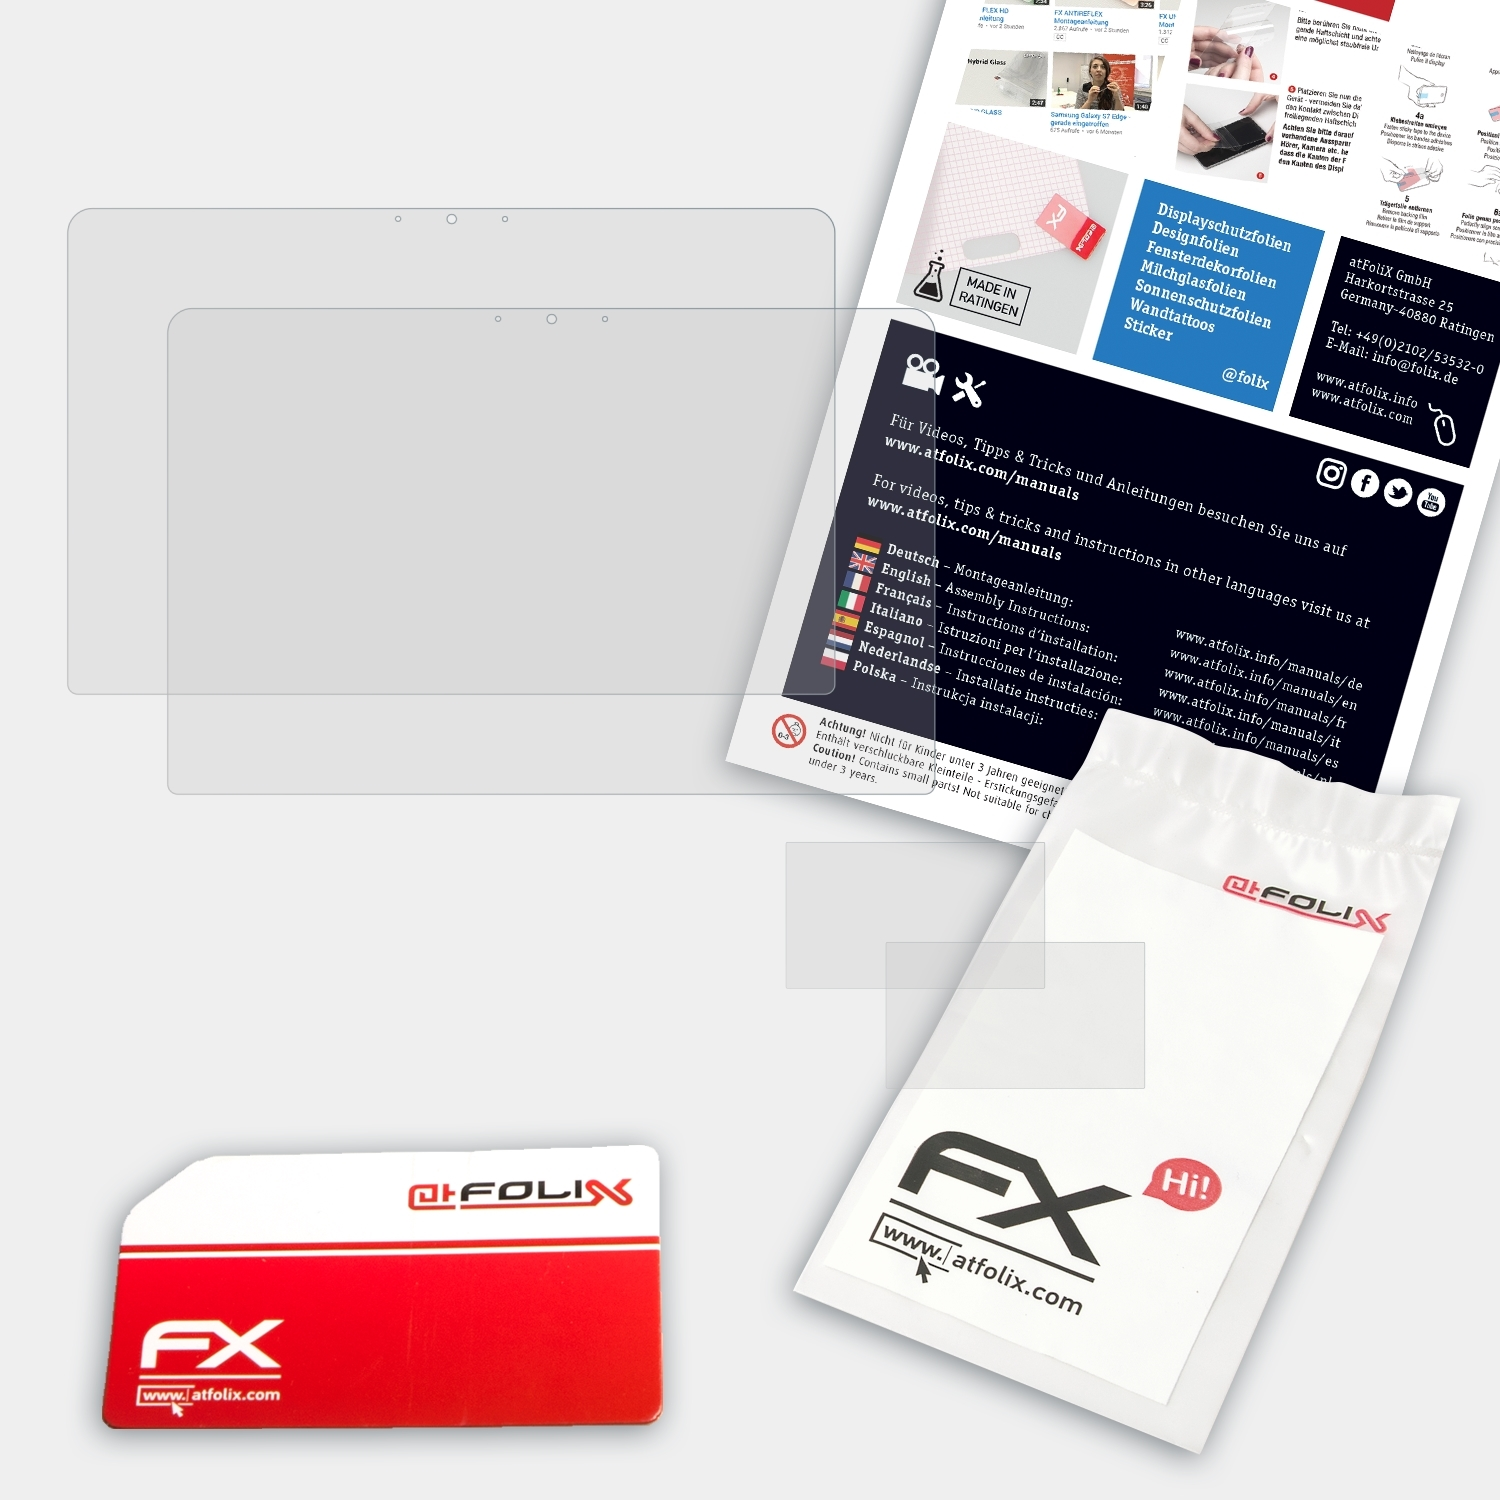 ATFOLIX Displayschutz(für 15 Pro 2x Asus (UX580GE)) FX-Antireflex ZenBook